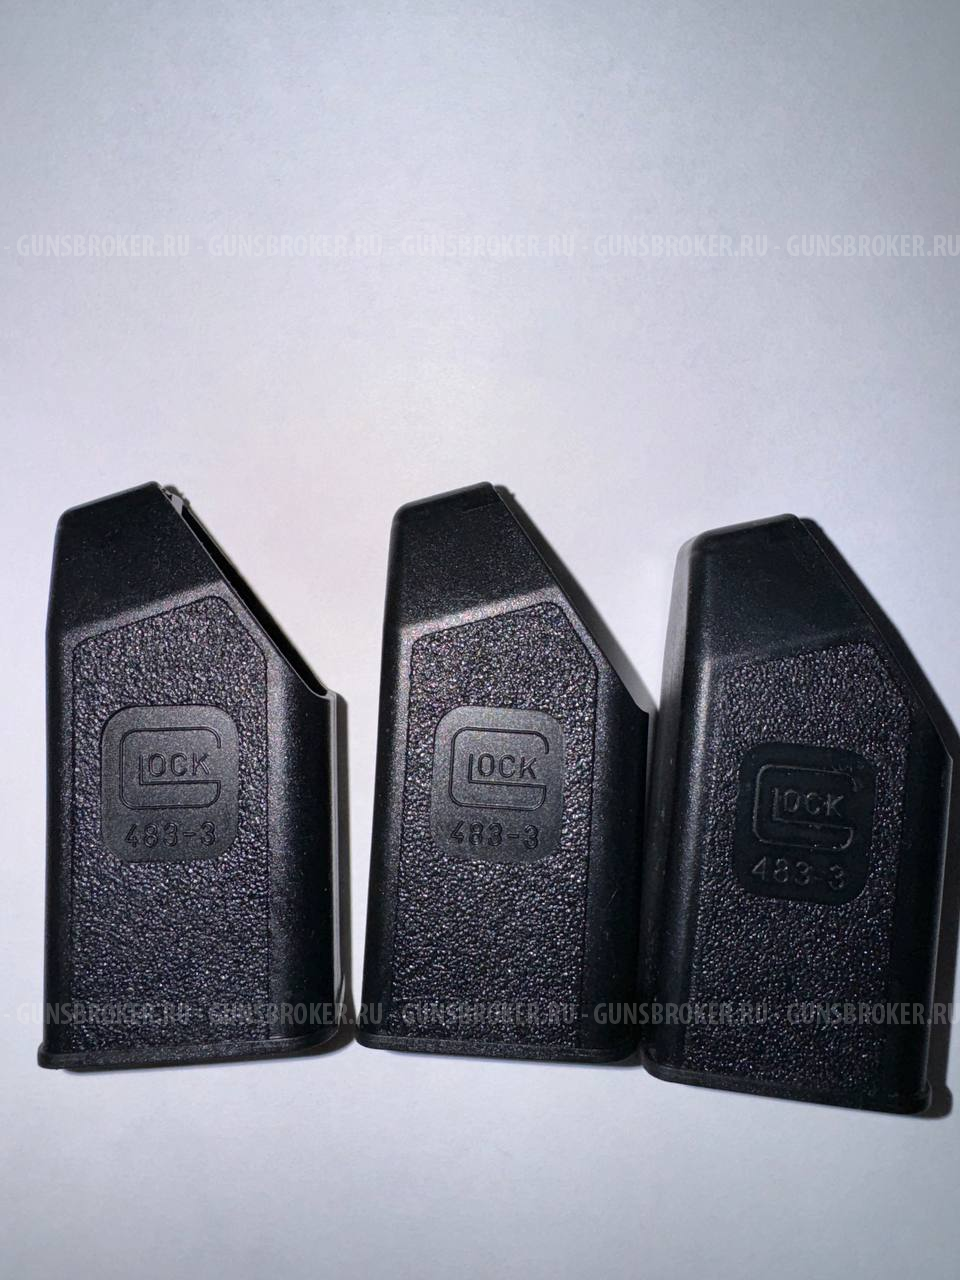 Запасные части Glock 17/ТК717Т обновление ассортимента 